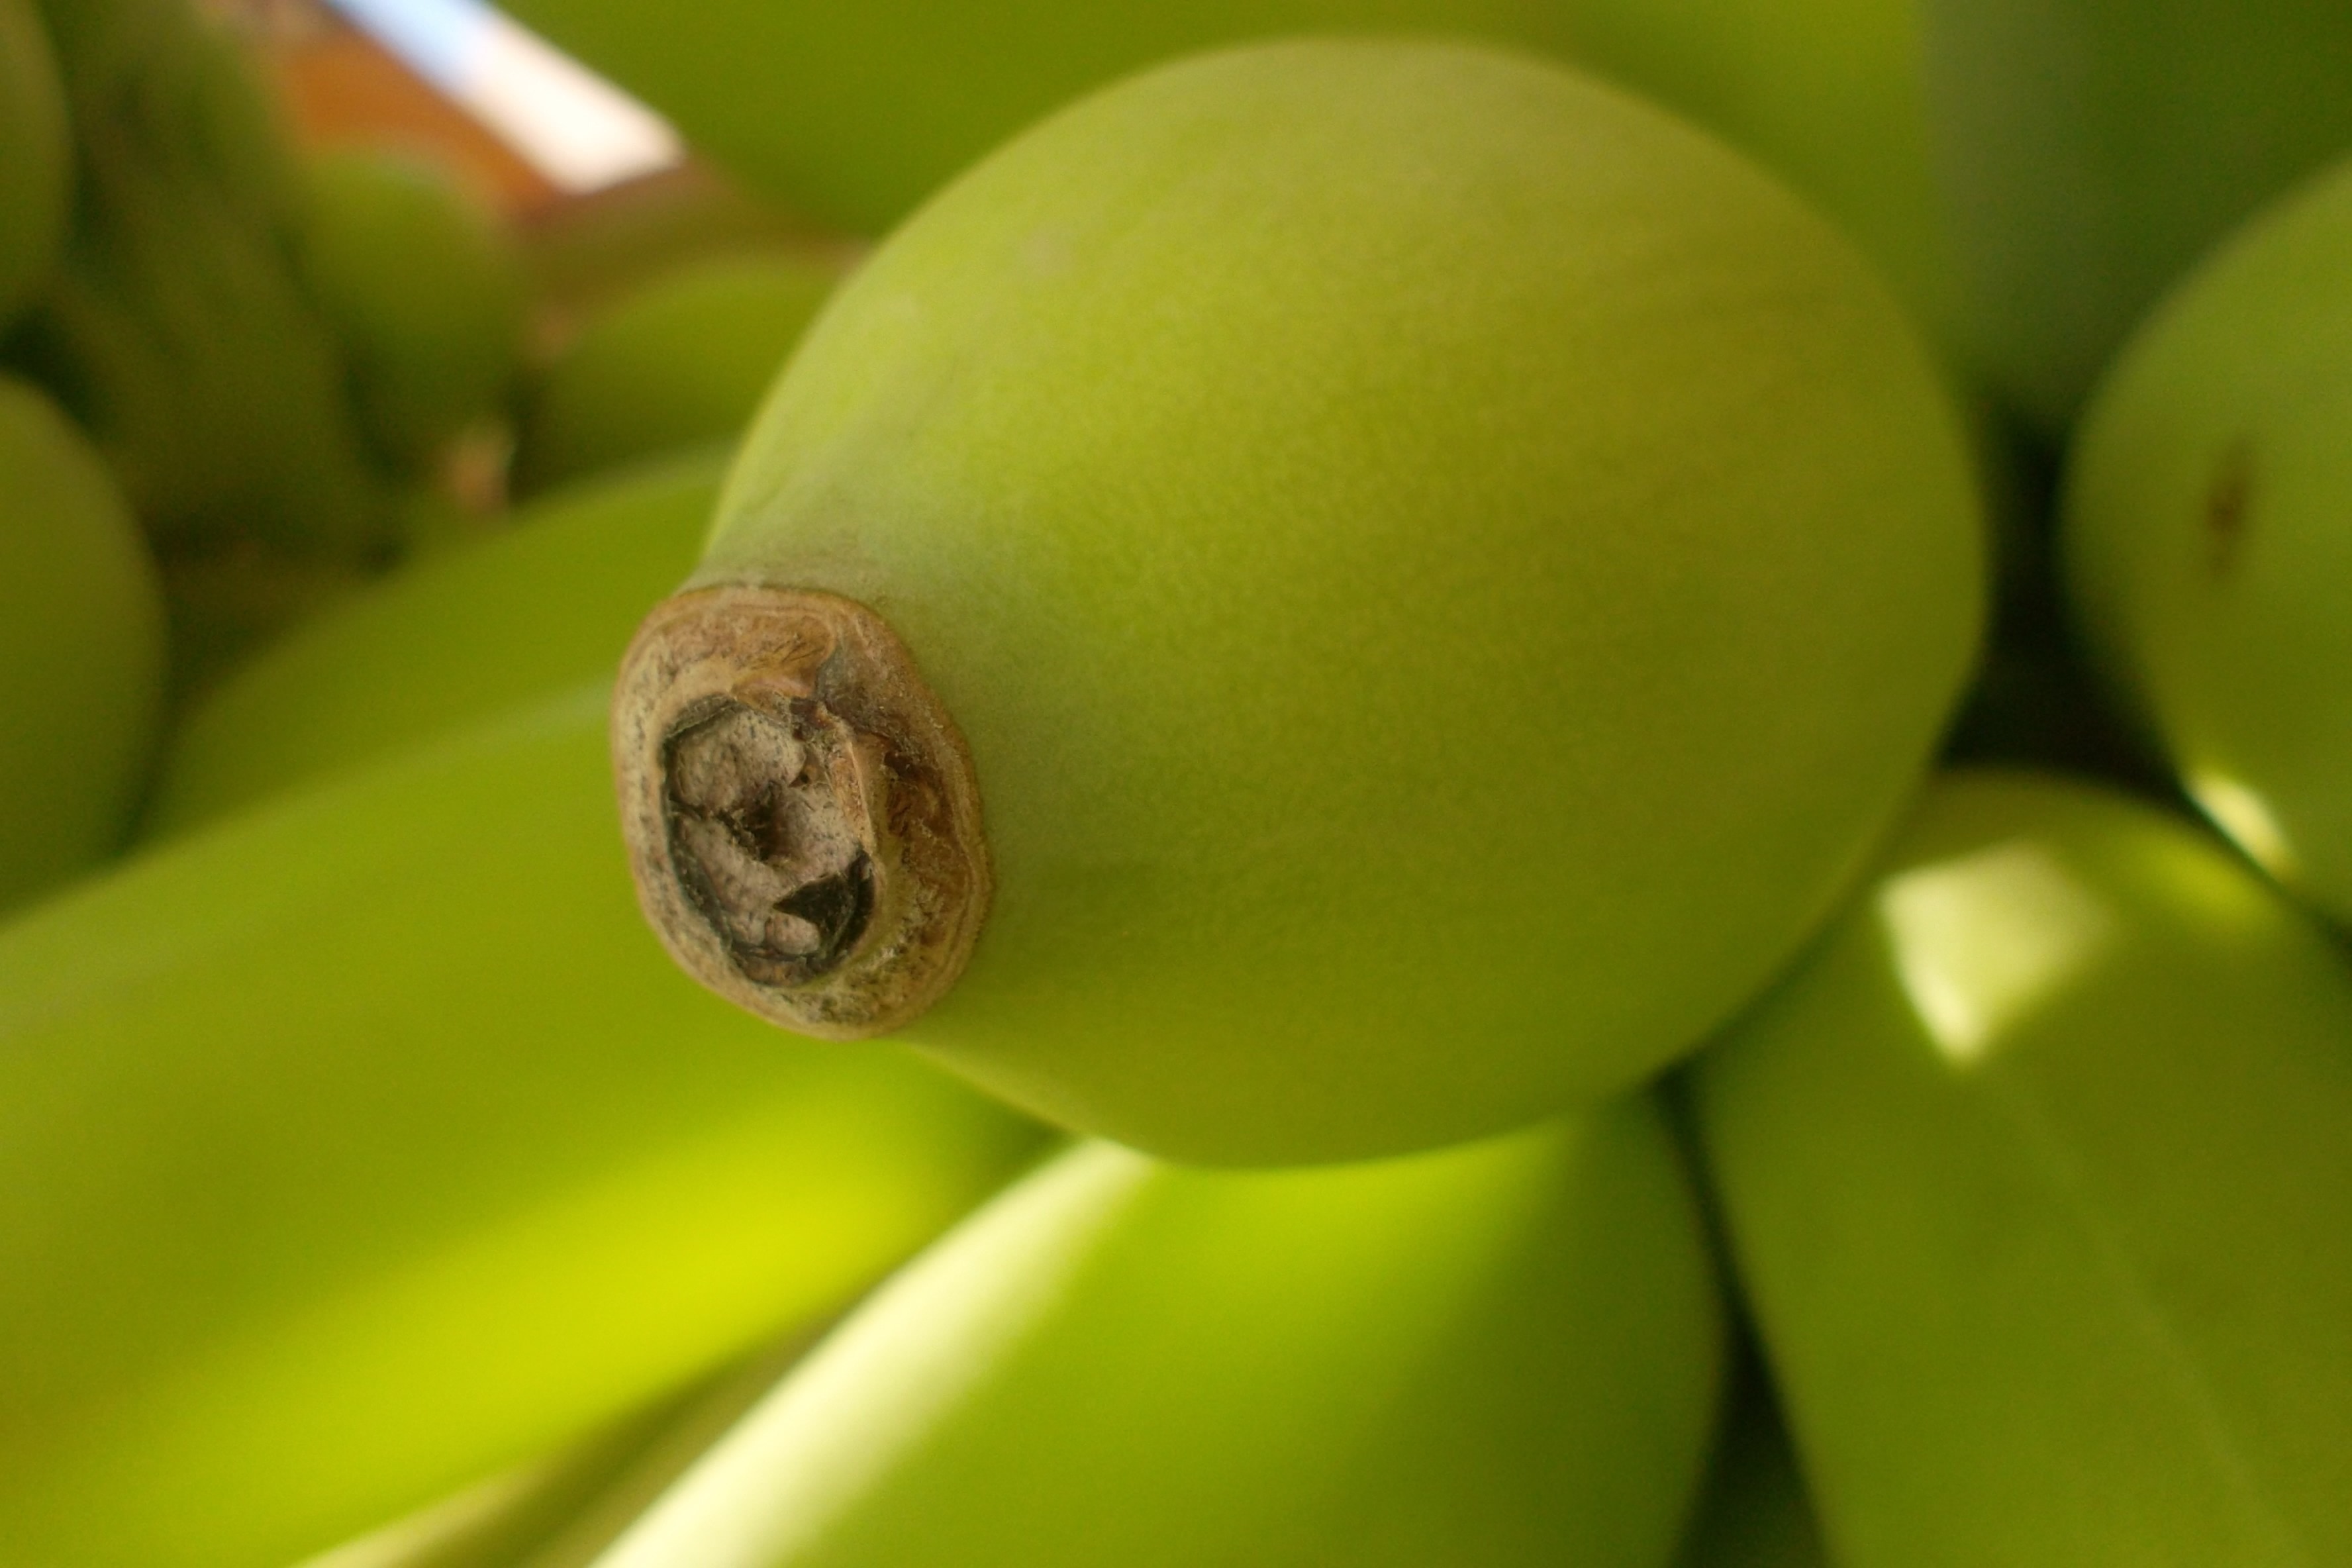 Green, Bananas, Tip, Garden, Banana, one animal, close-up